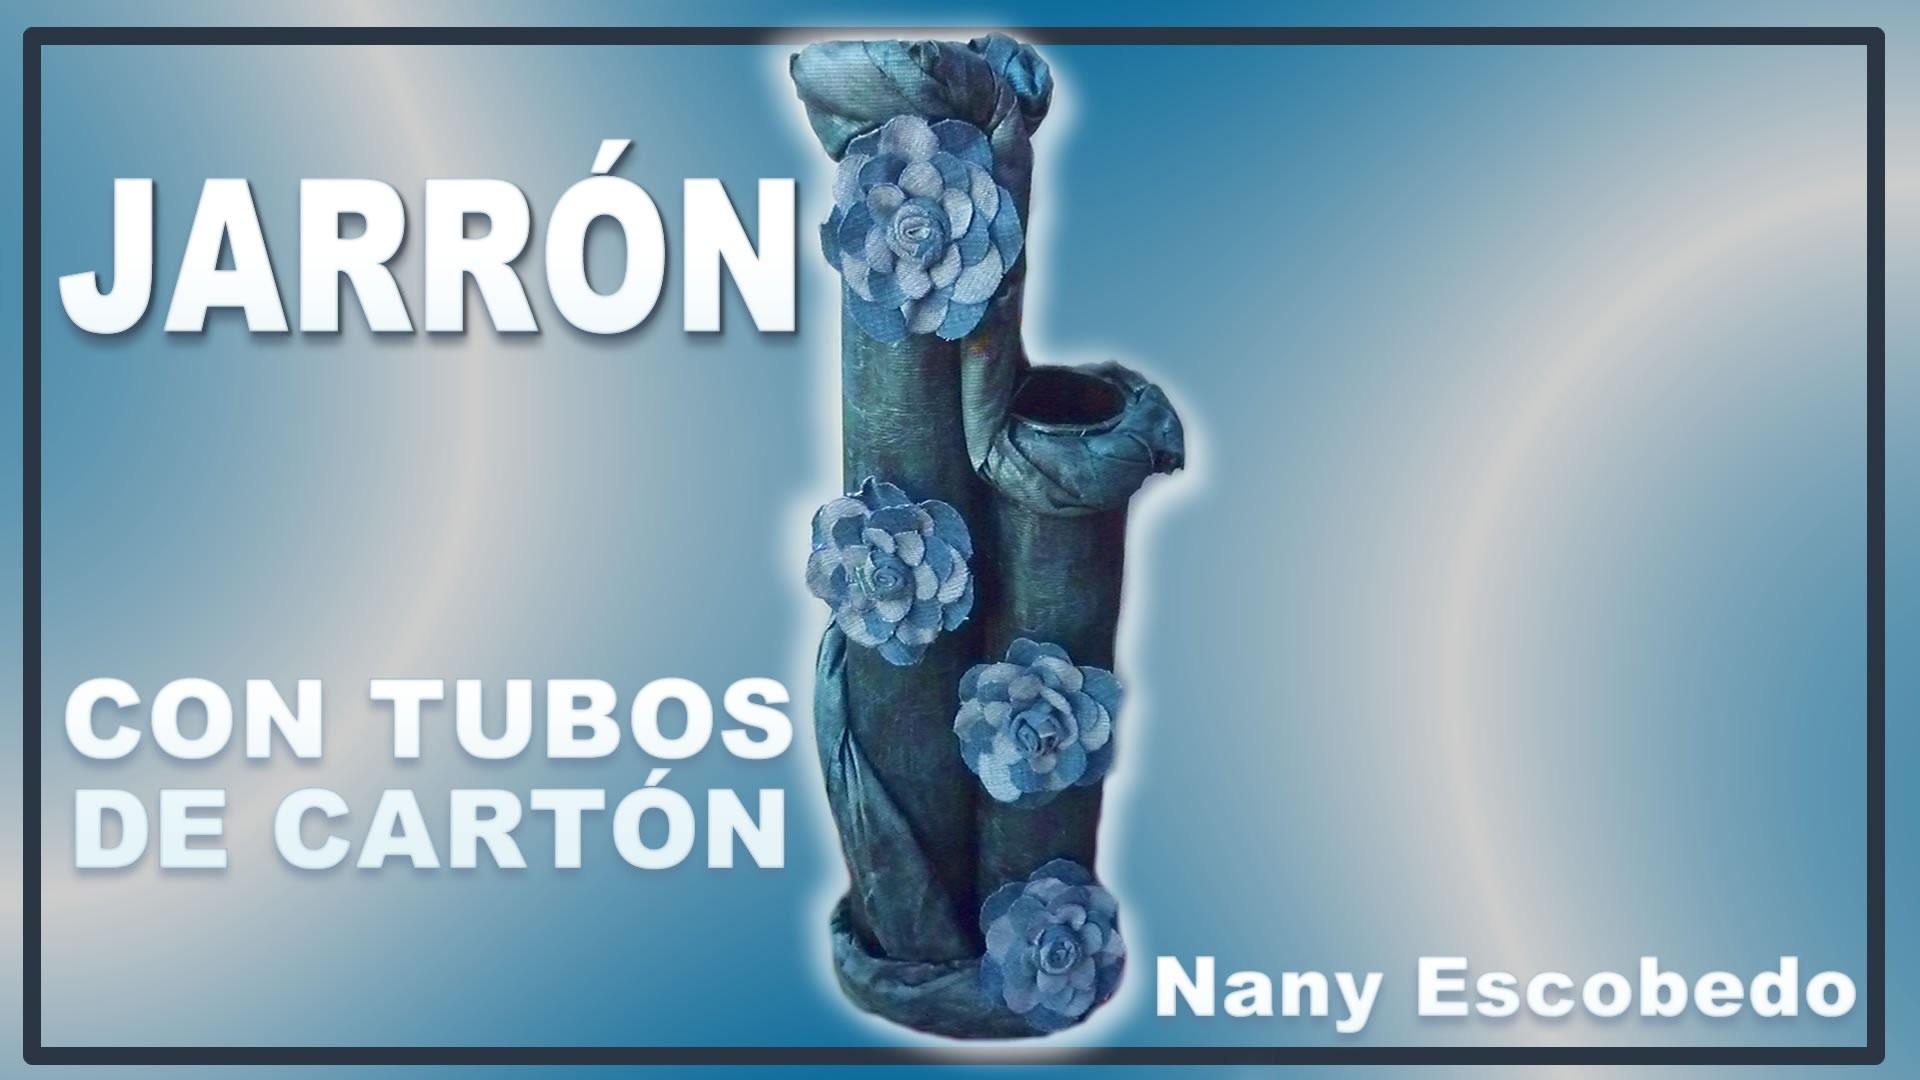 JARRÓN CON TUBOS DE CARTÓN. VASE WITH CARDBOARD TUBES